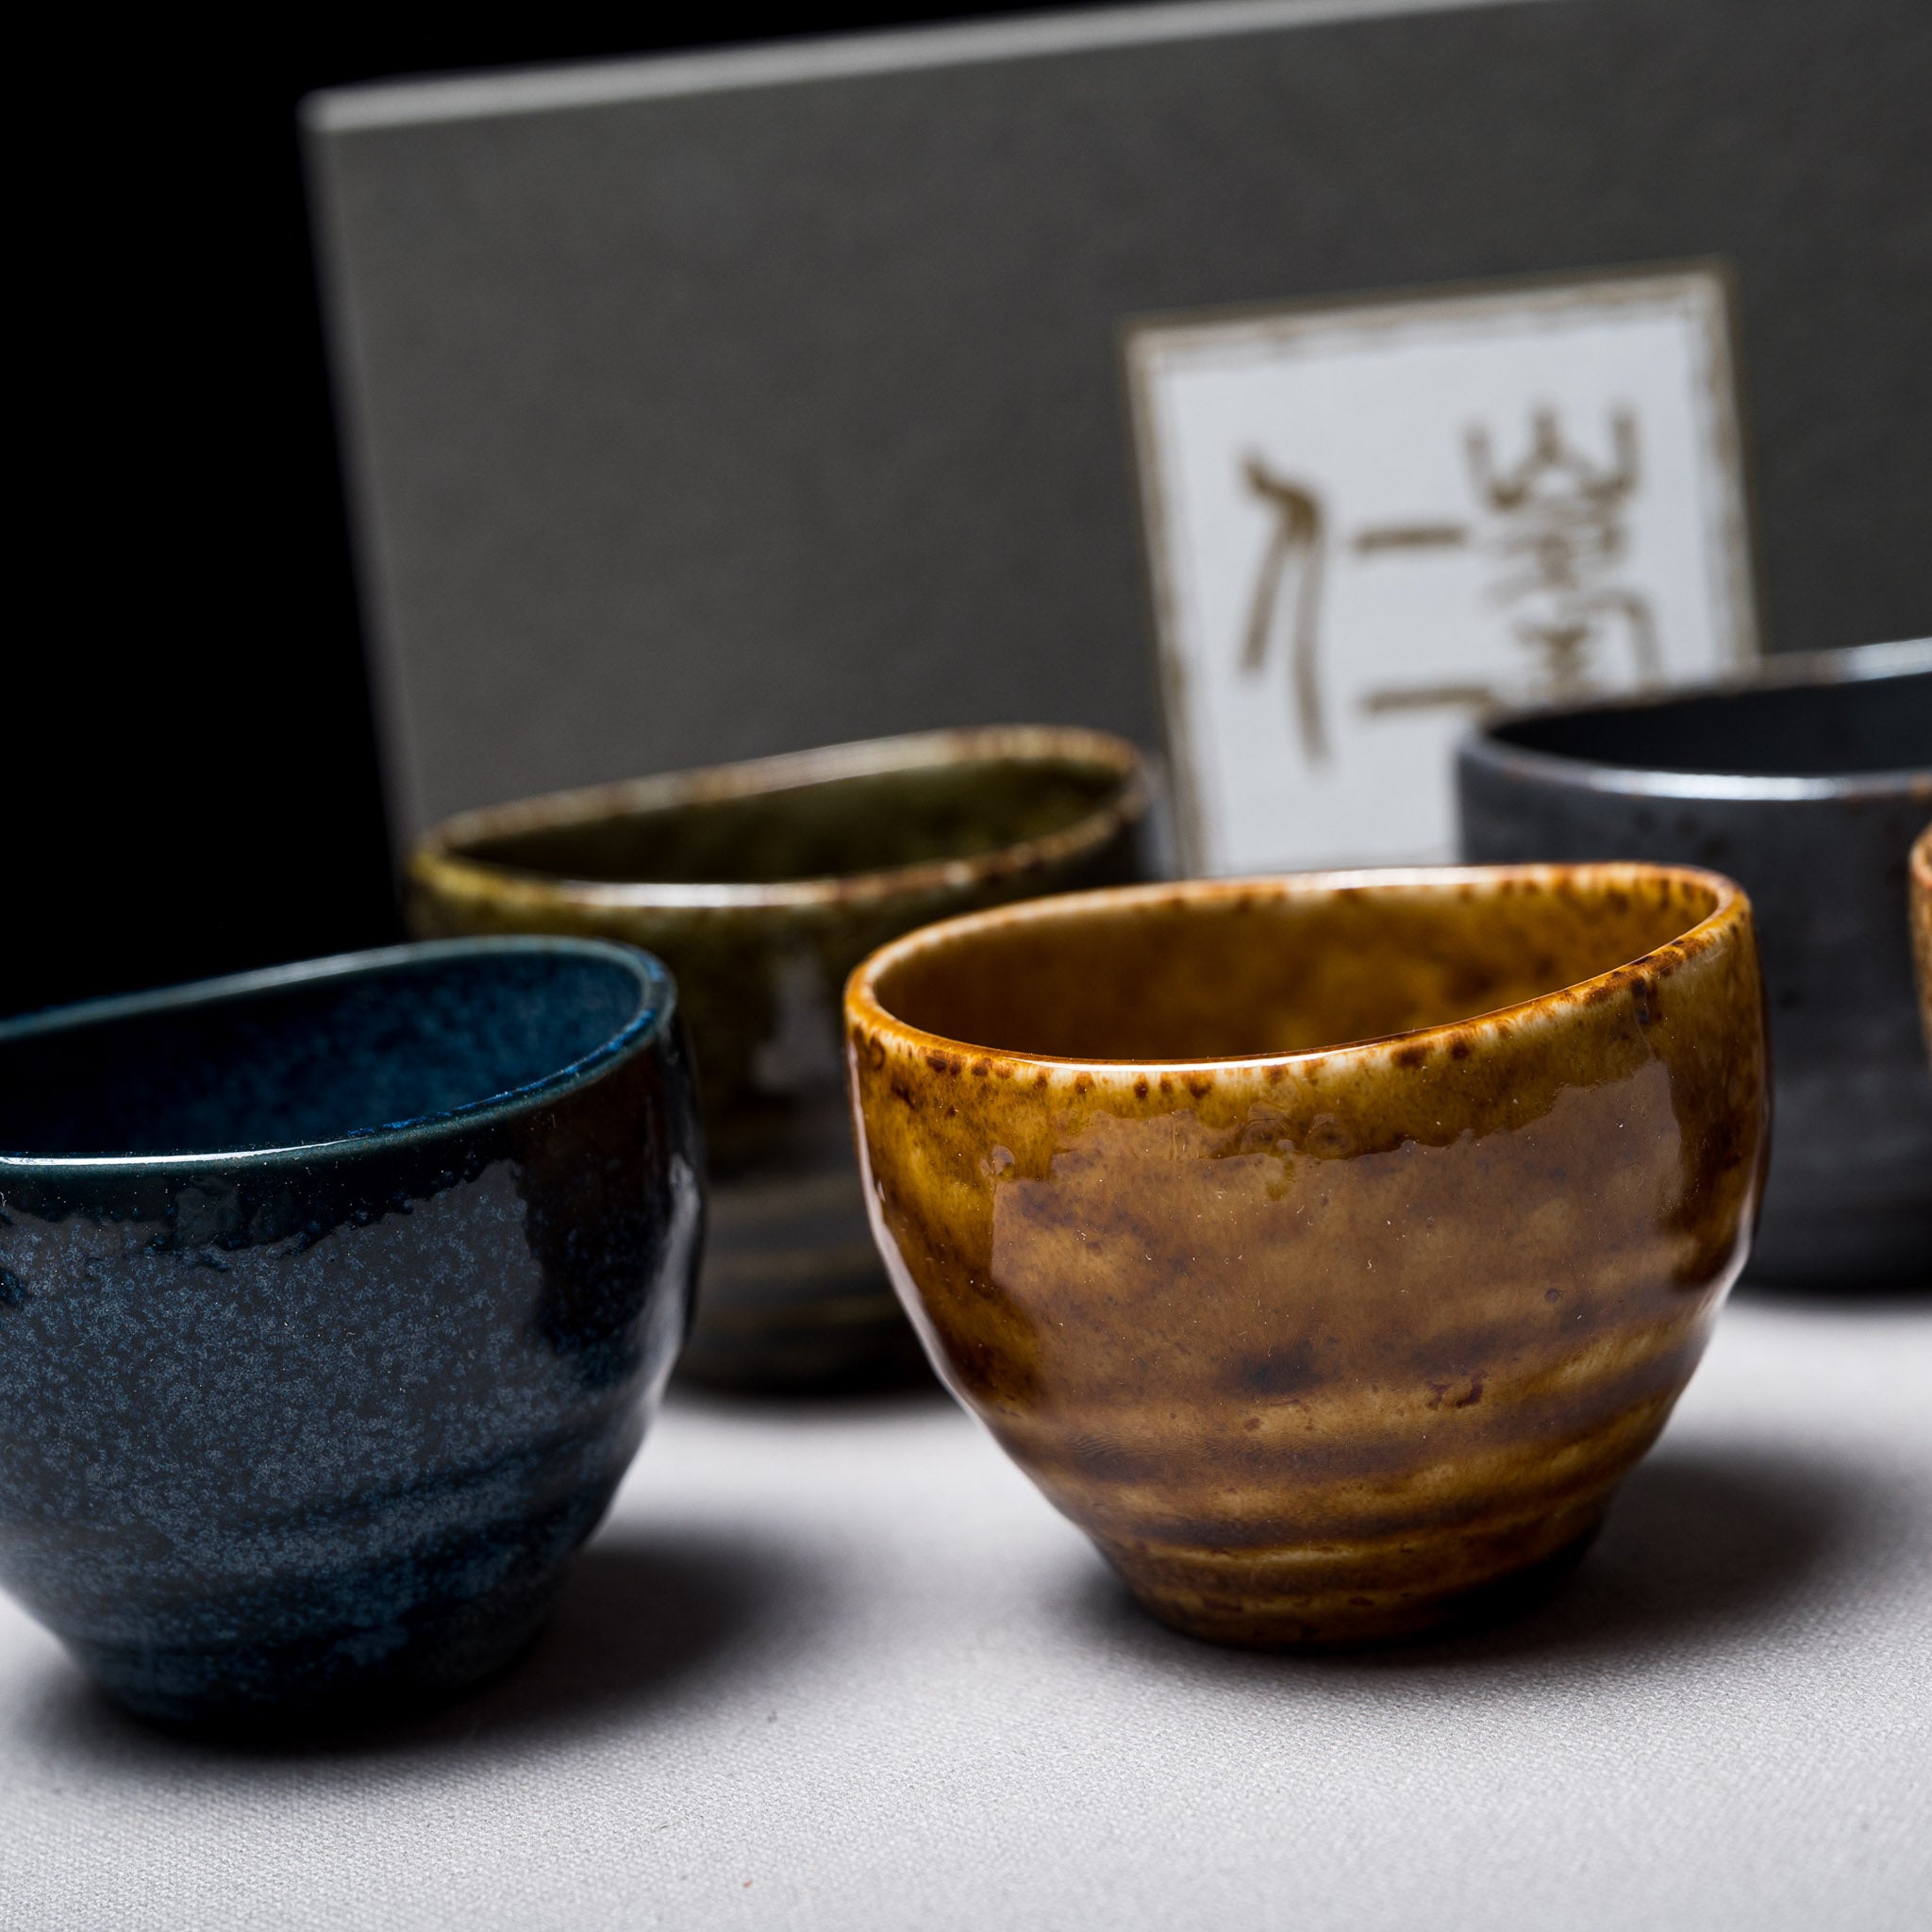 Japanese Dessert Bowl / Tea Cup - Set of 5 / Mino Ware 碗揃え 美濃焼き